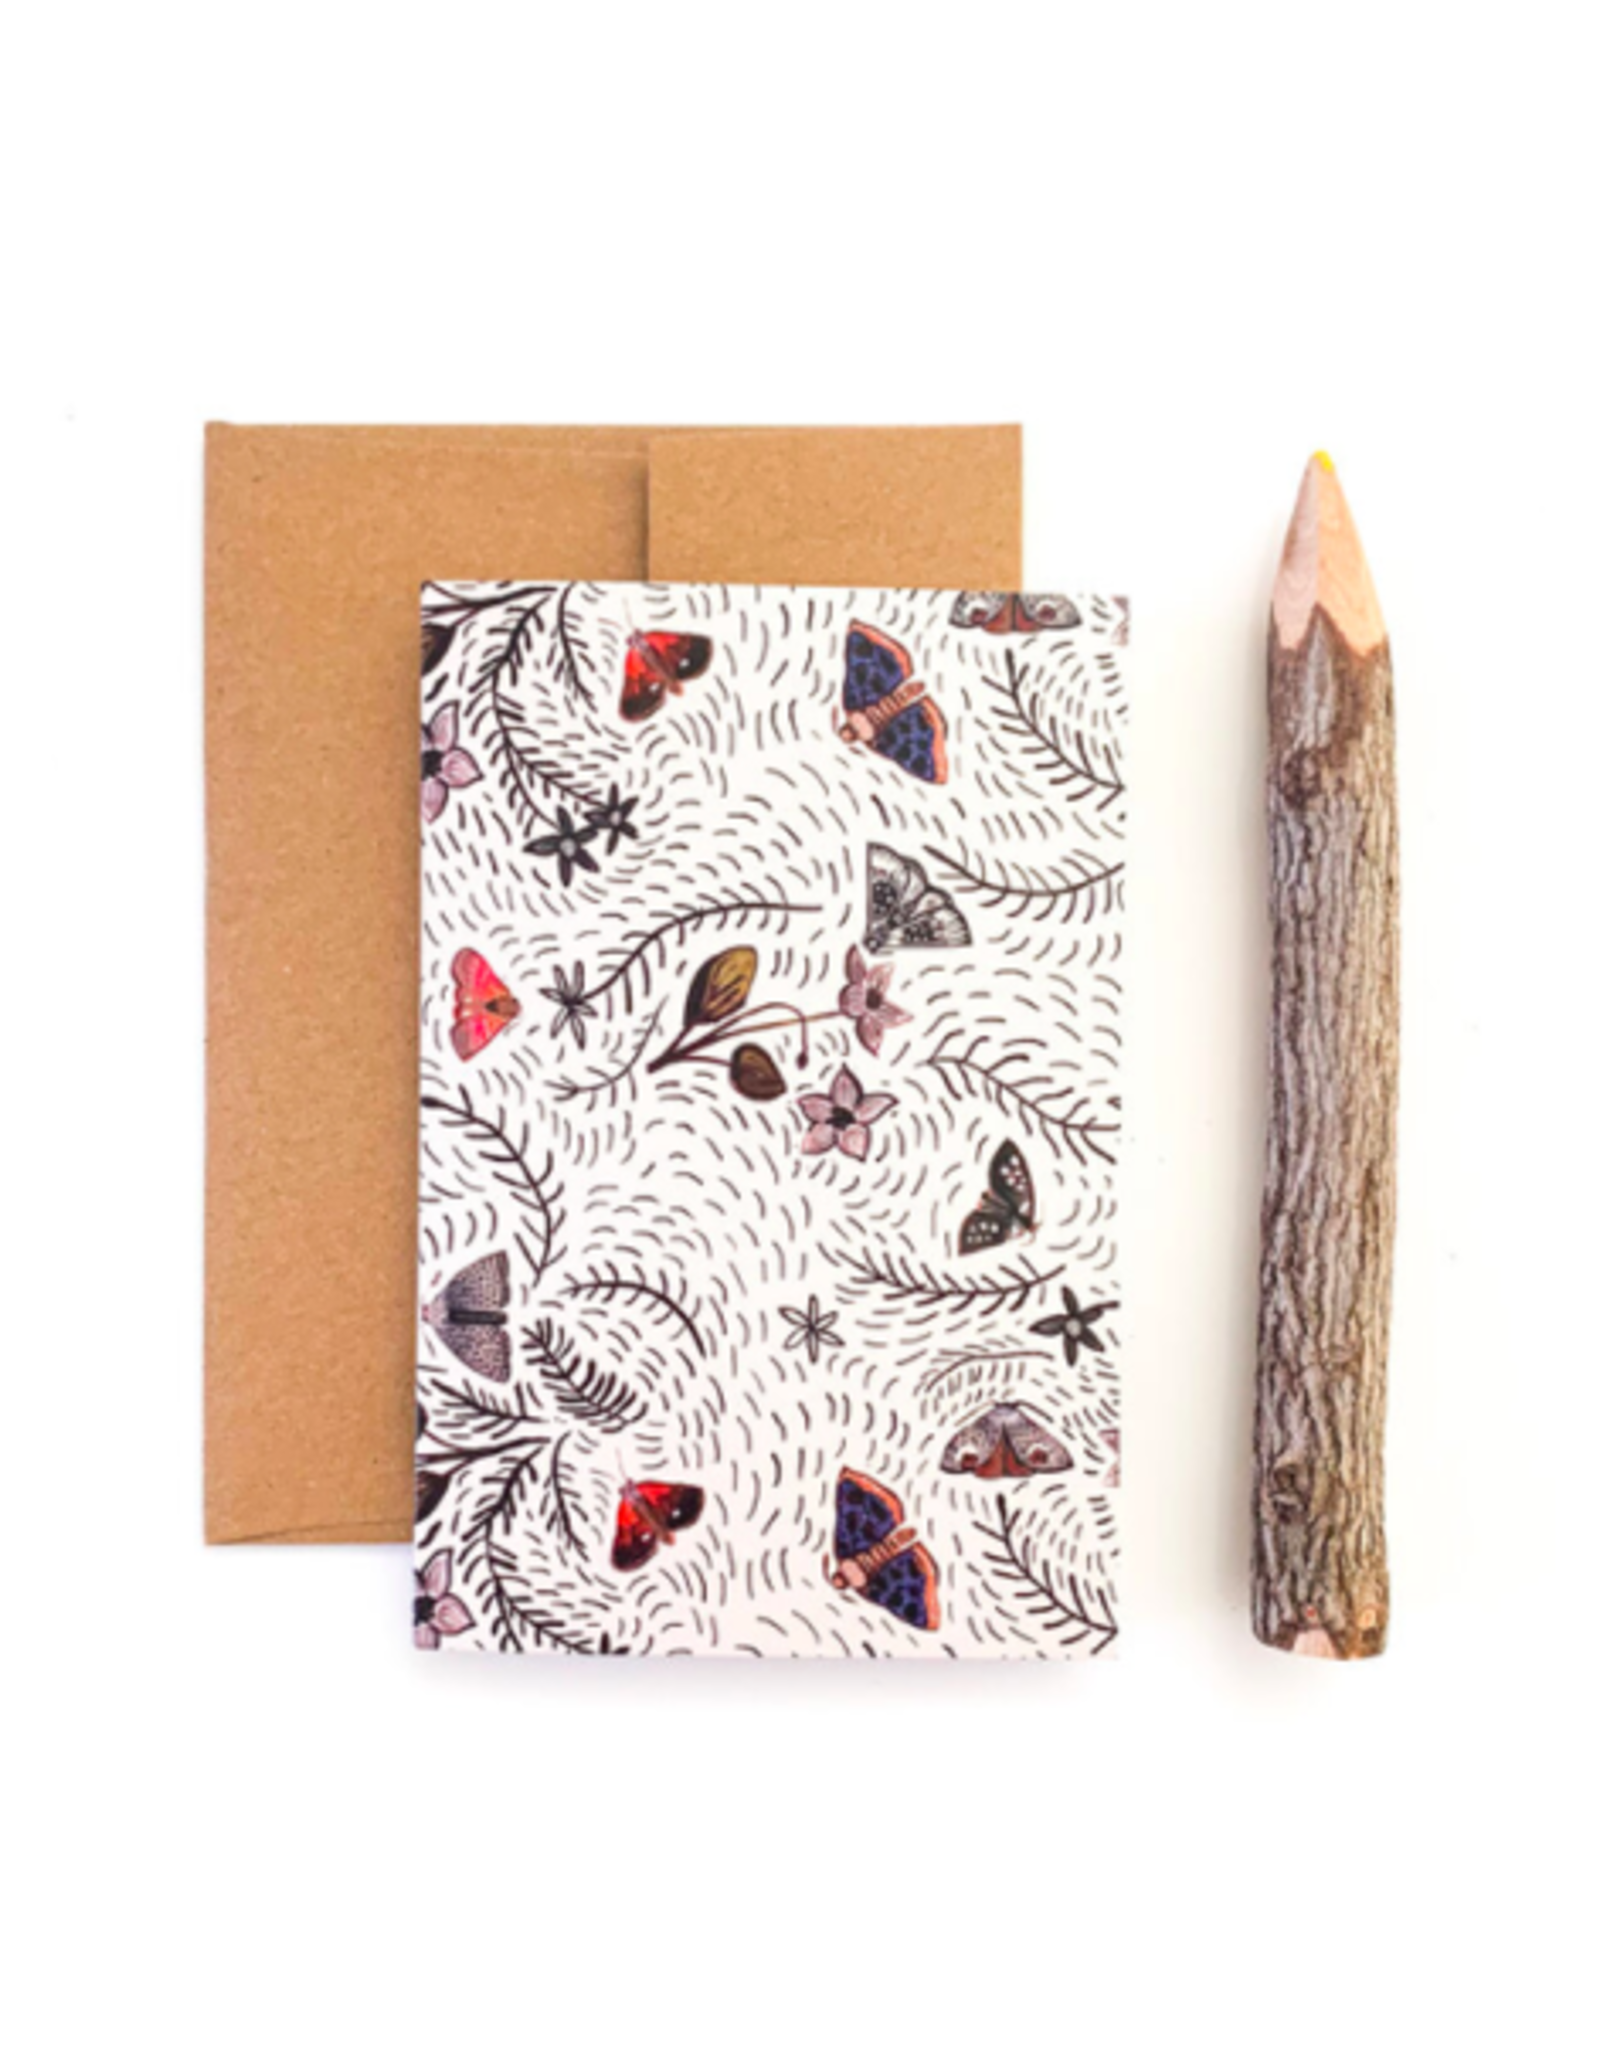 Briana Corr Scott - Card / Moths & Hellebore, 4 x 6